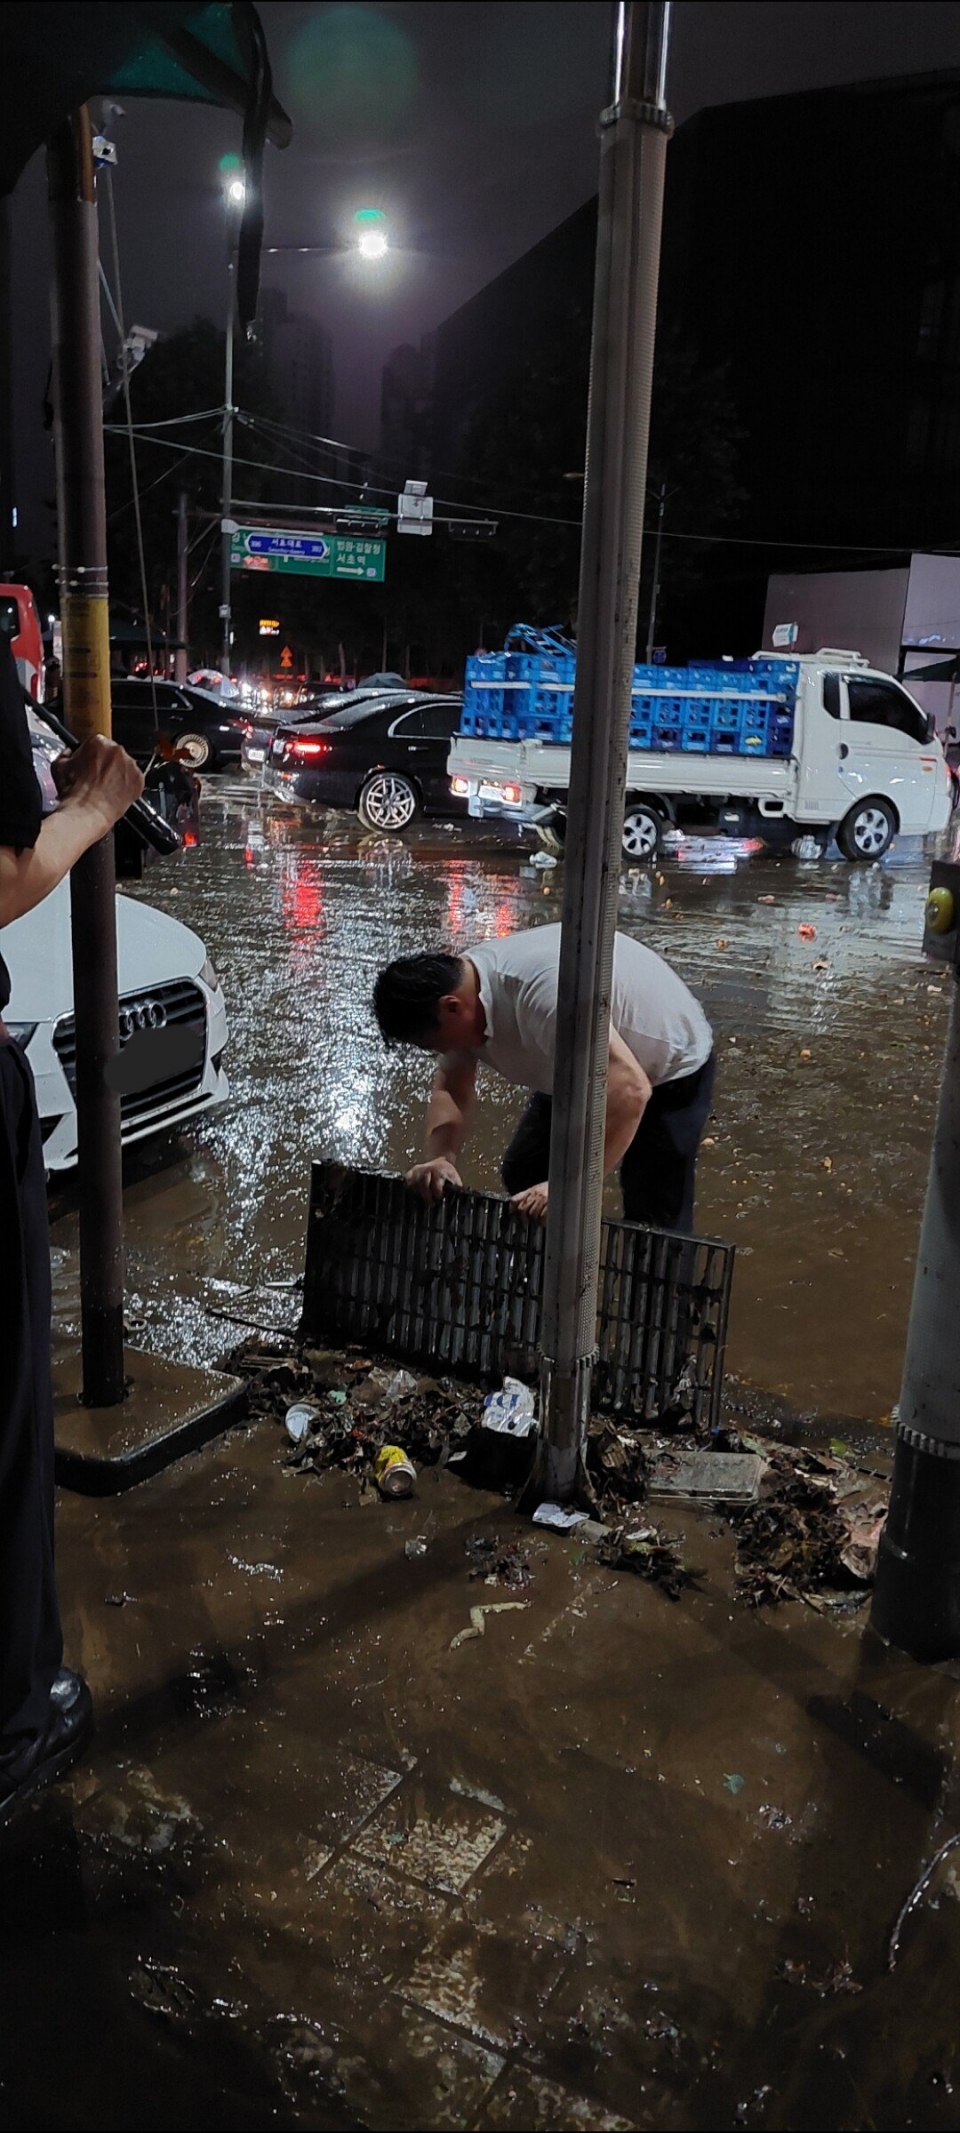 한 중년 남성이 8일 밤 집중 호우로 물이 범람한 강남역에서 배수로를 치우는 모습이 포착됐다. 이 사진을 인터넷에 올린 네티즌은 이 남성을 '슈퍼맨'이라 칭했다. [사진=에펨코리아]